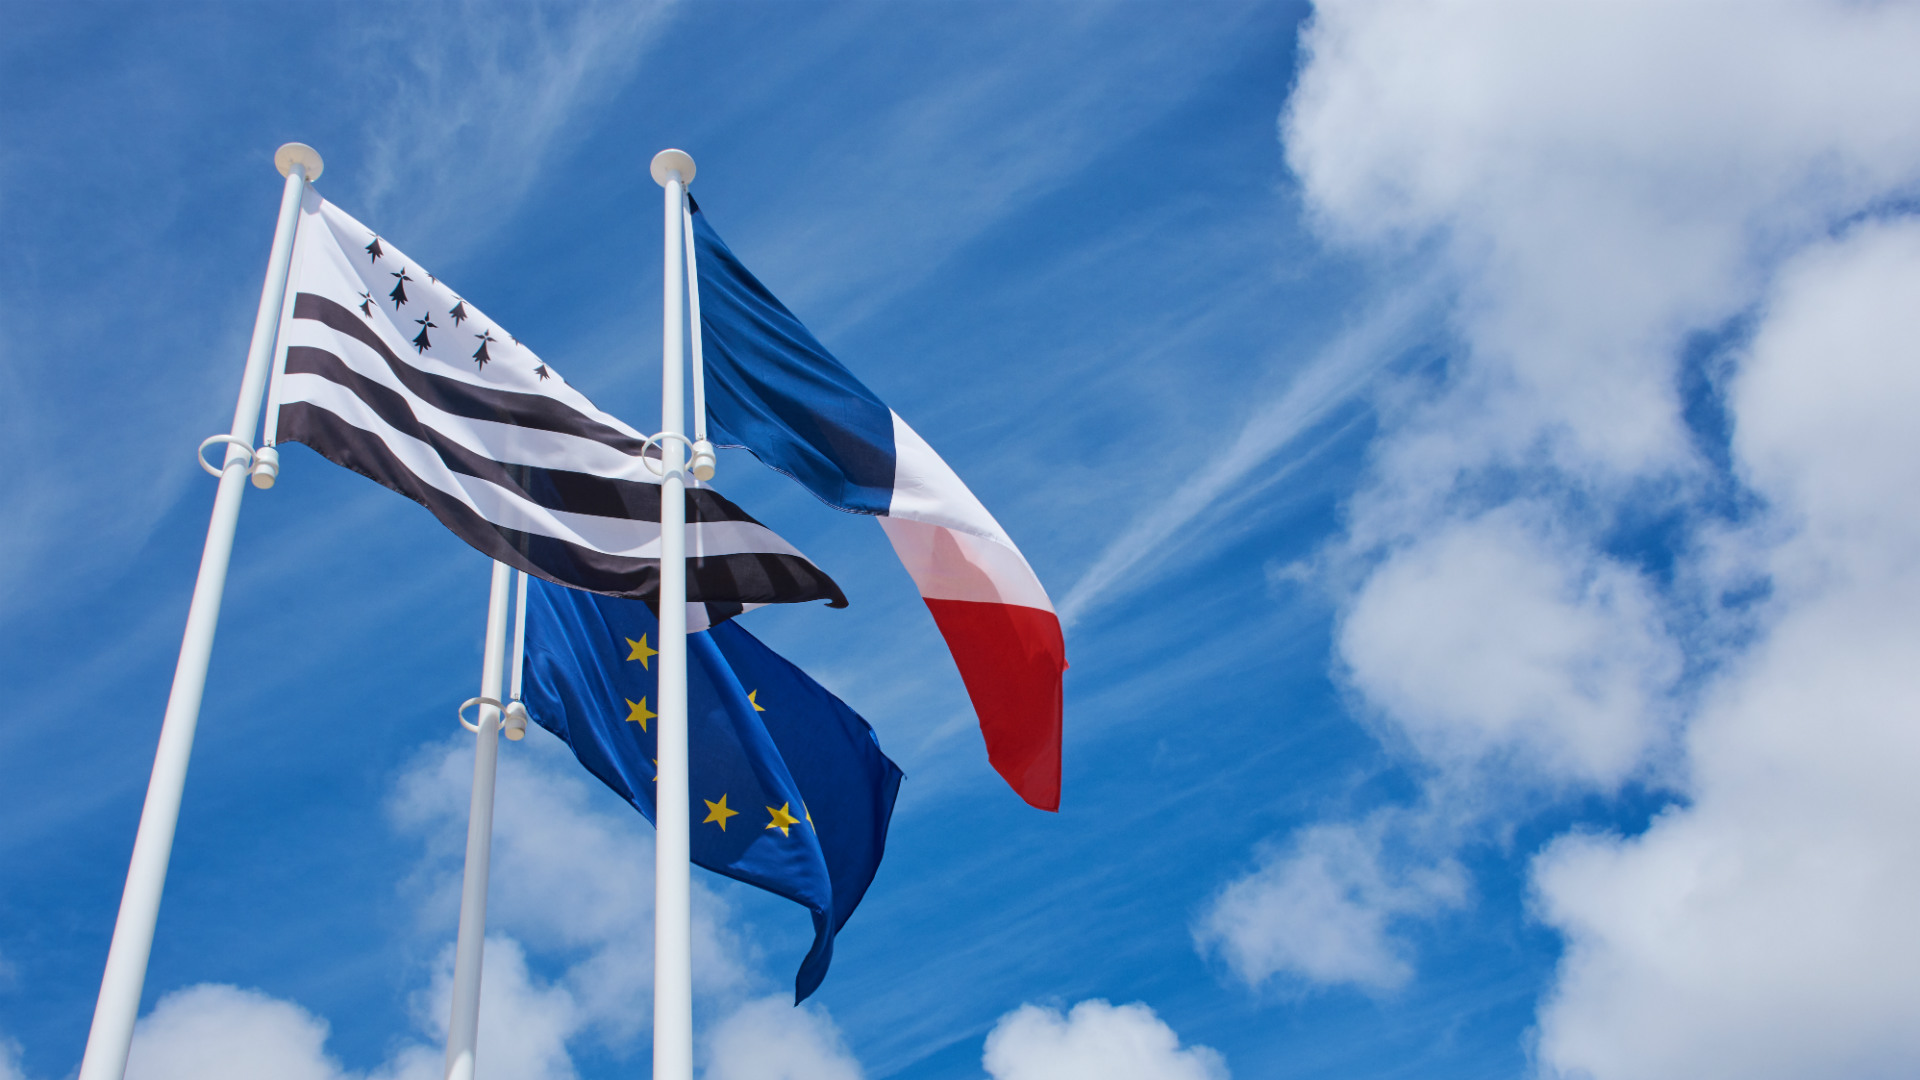 Drapeaux français, européen et breton flottant dans le ciel